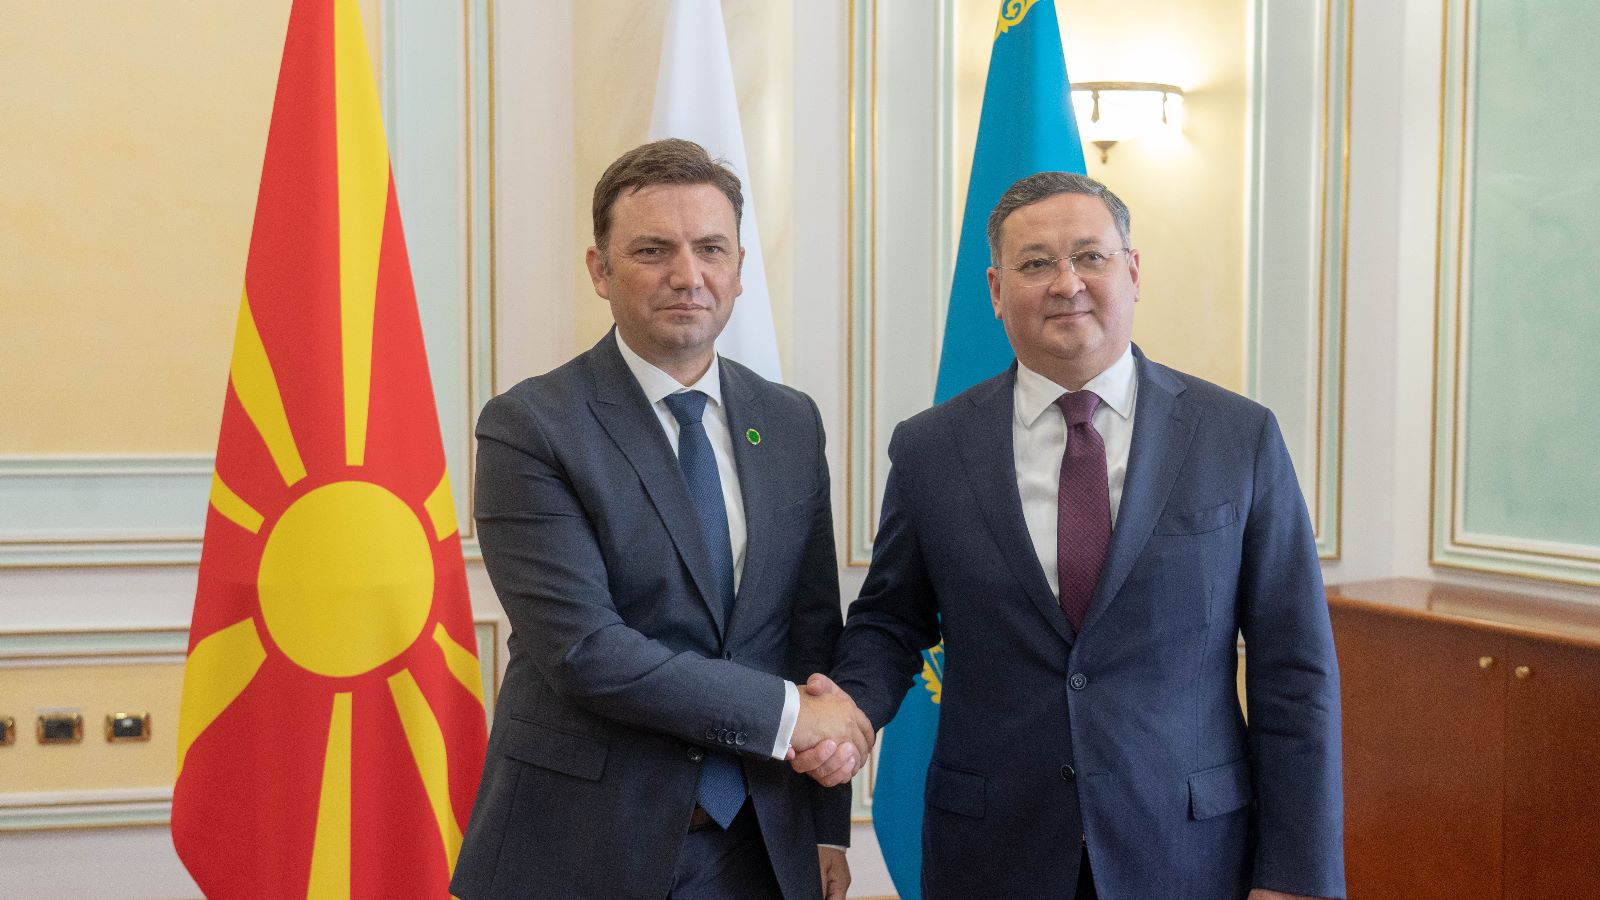 Ministri i Jashtëm i RMV-së – Bujar Osmani dhe ministri i Jashtëm i Kazakistanit - Murat Nurtleu. Foto: Profili zyrtar në Facebook i Bujar Osmanit